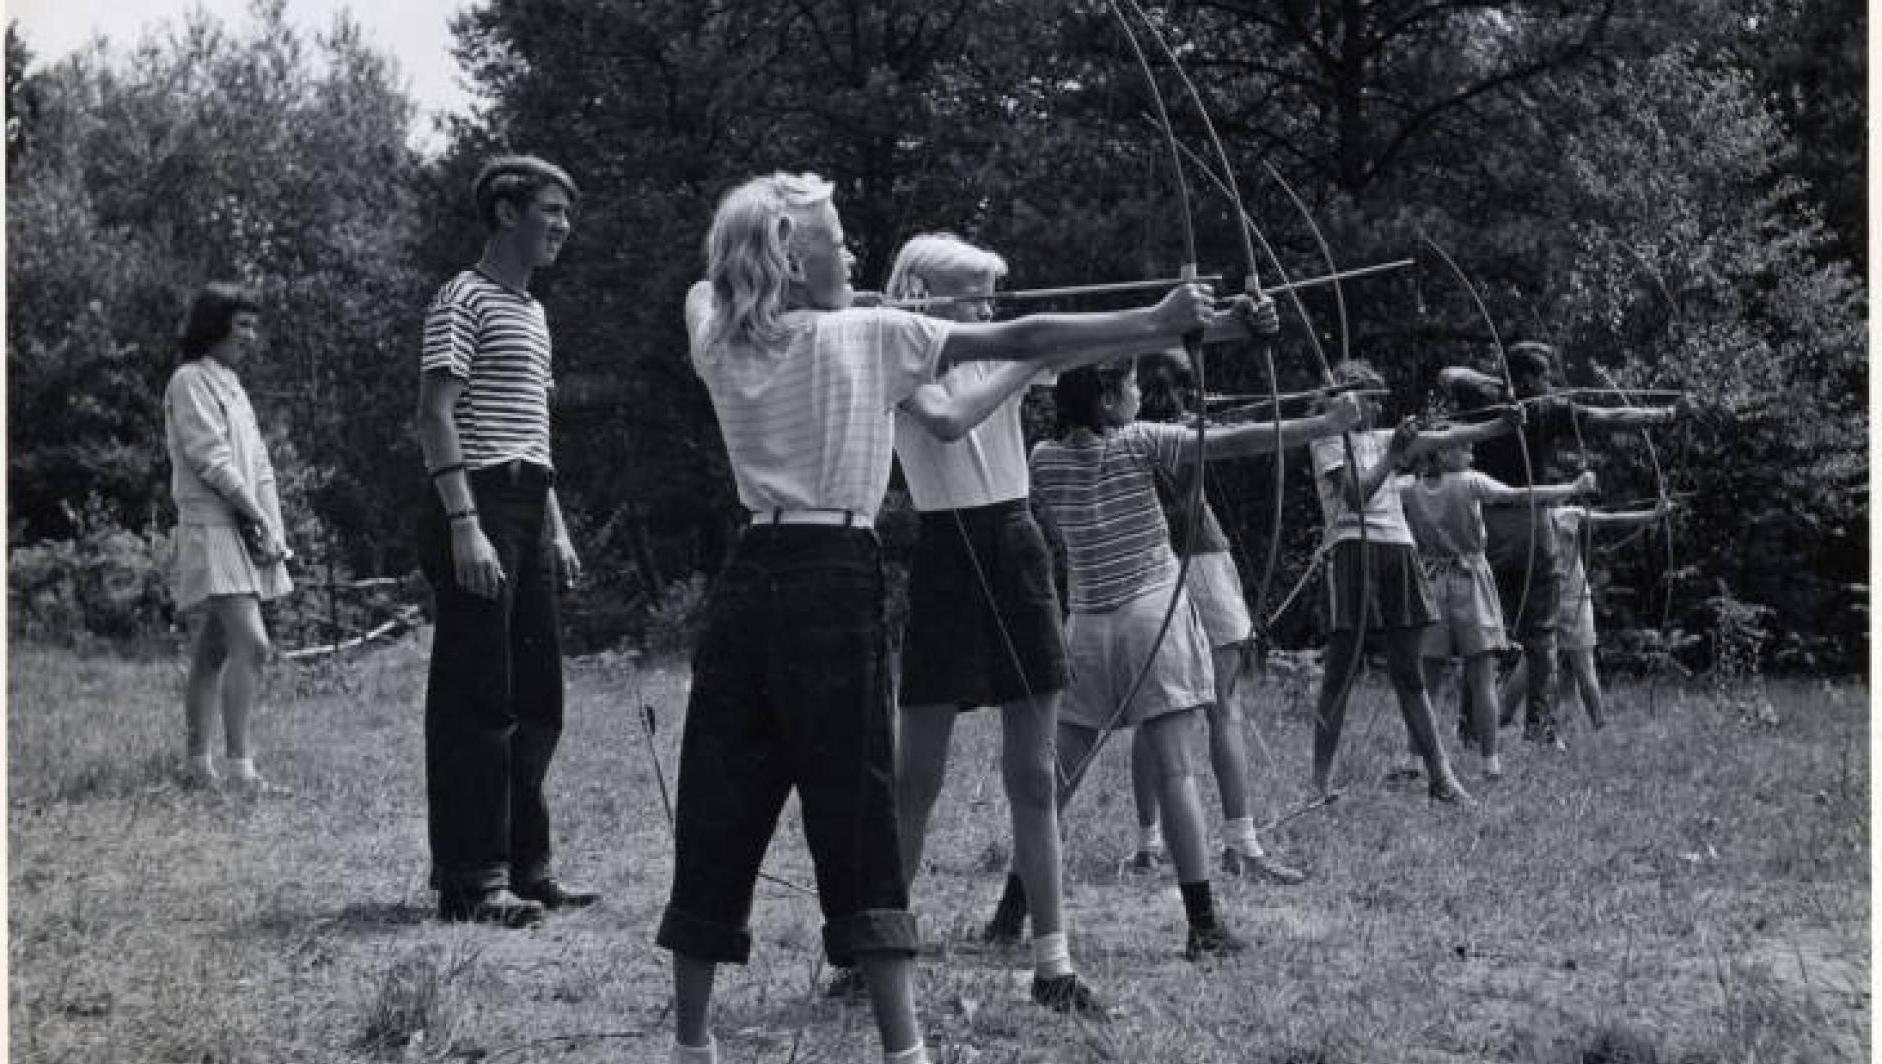 Girls at an archery class. 